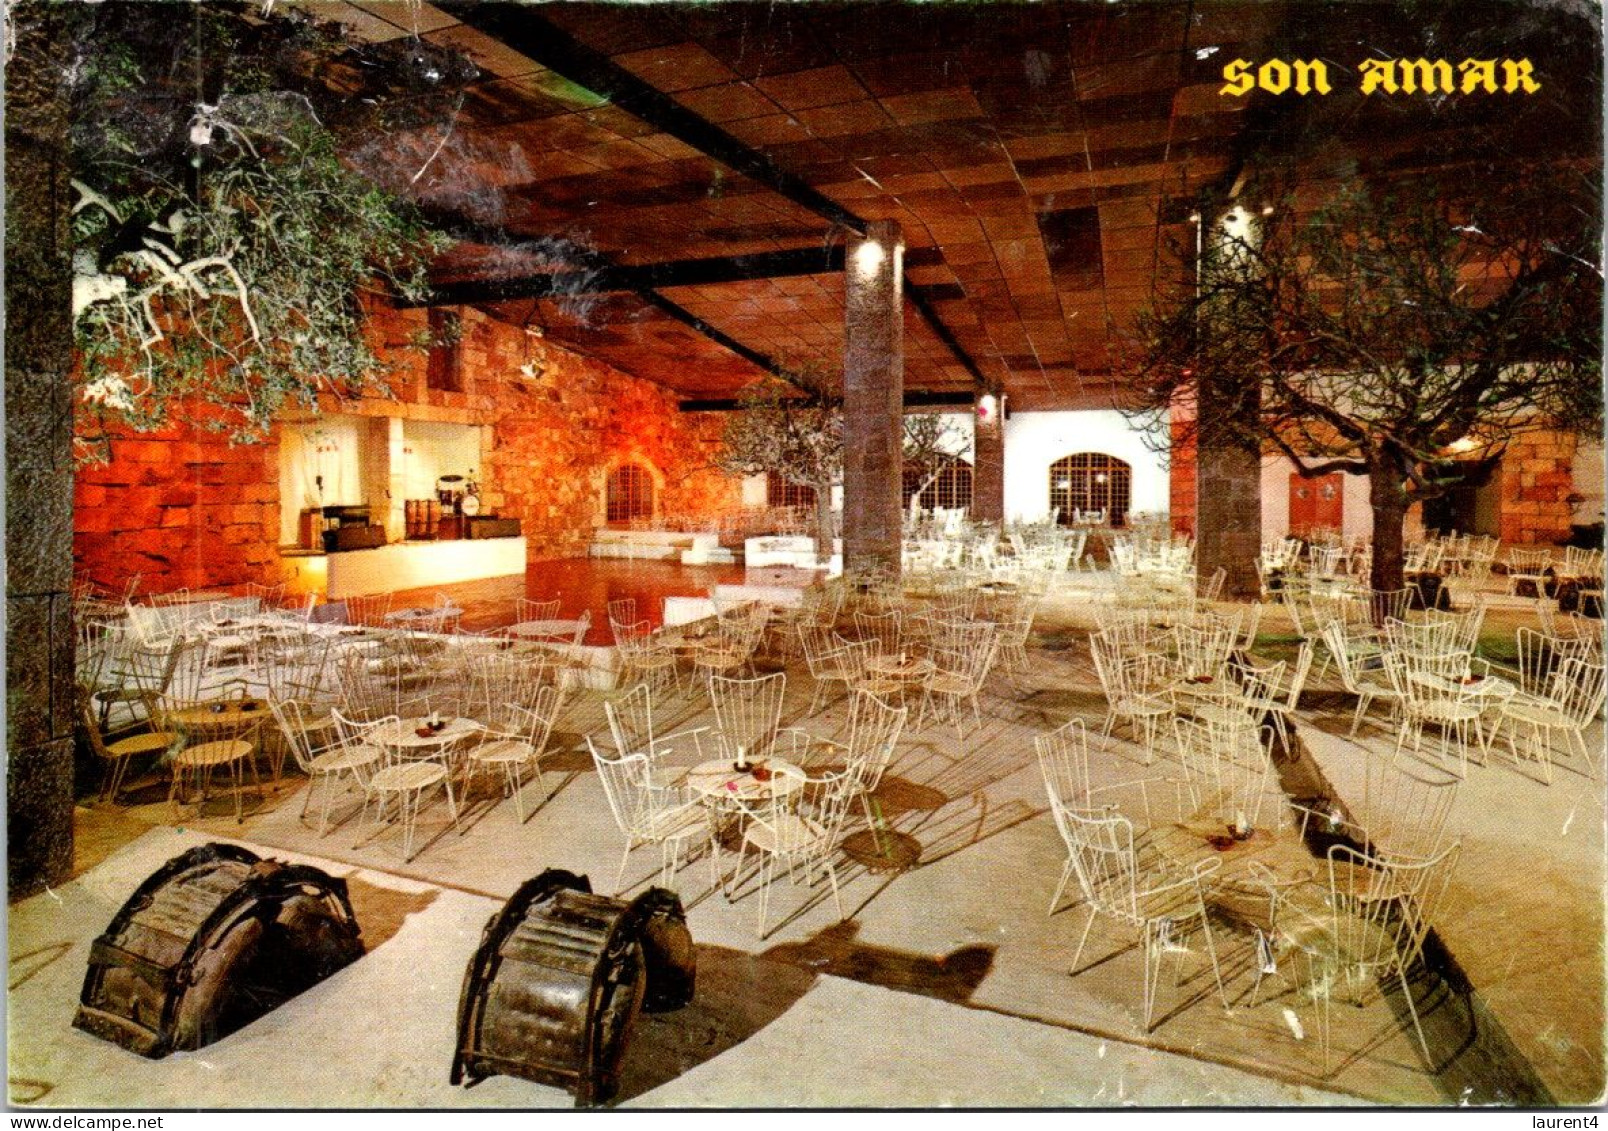 2-5-2024 (3 Z 38) Spain - Son Amar Barbecue Restaurant - Hotels & Restaurants